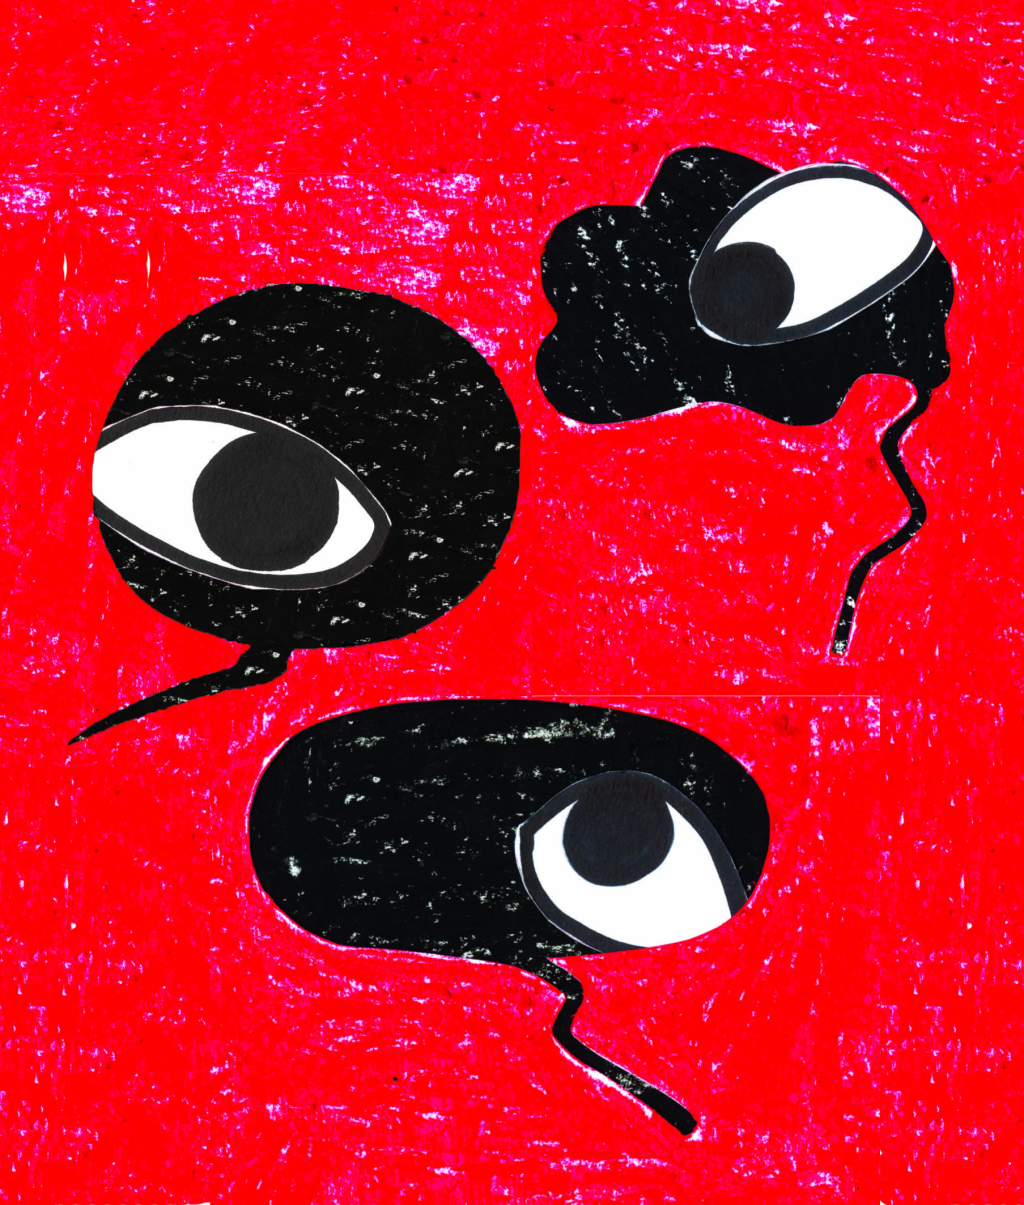 Eine Illustration von Tania Perez, welche drei Augen in Sprechblasen darstellt.